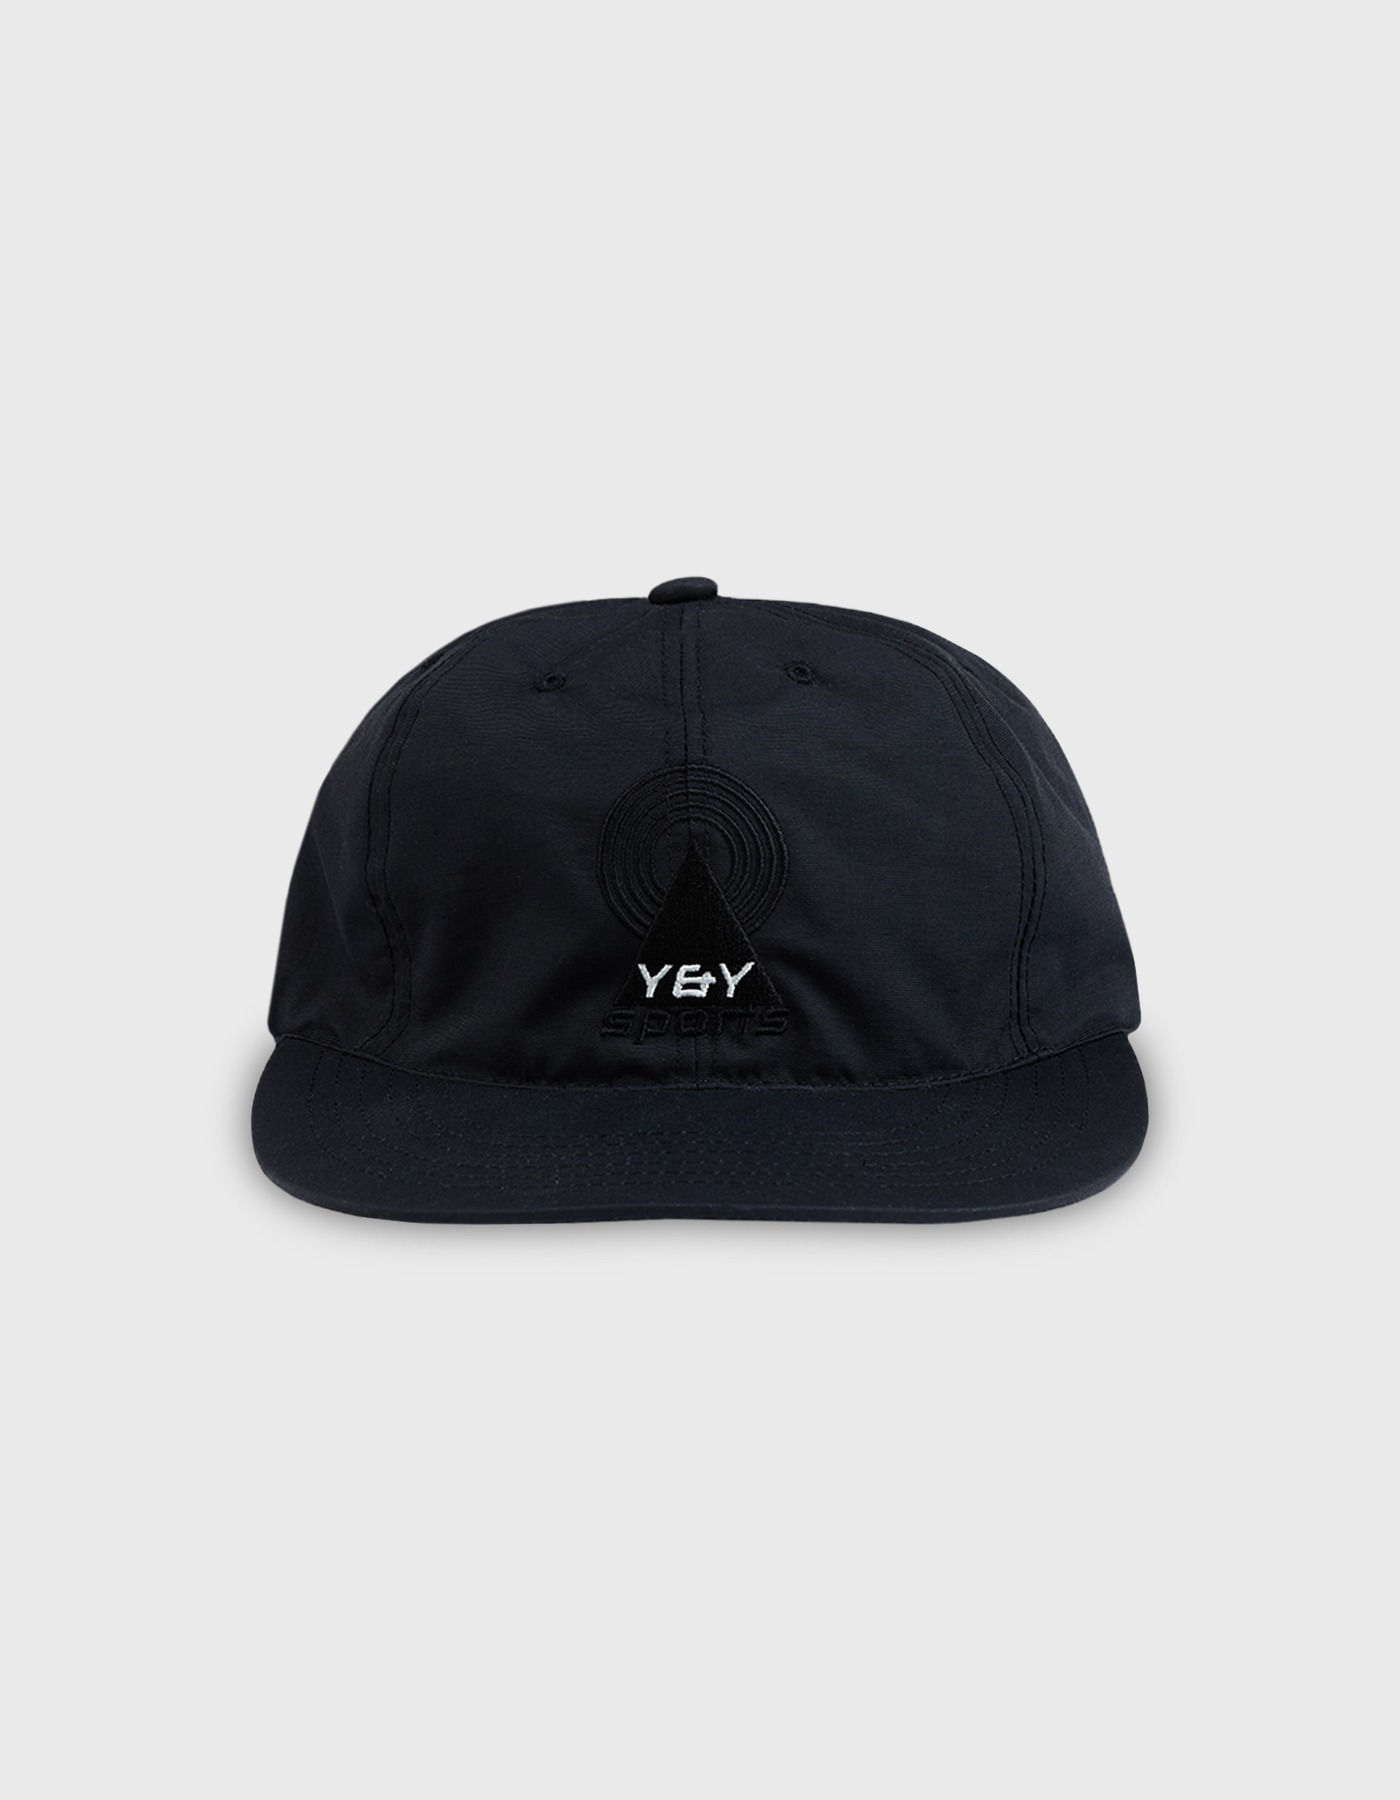 YNY SPORTS LOGO CAP / Black